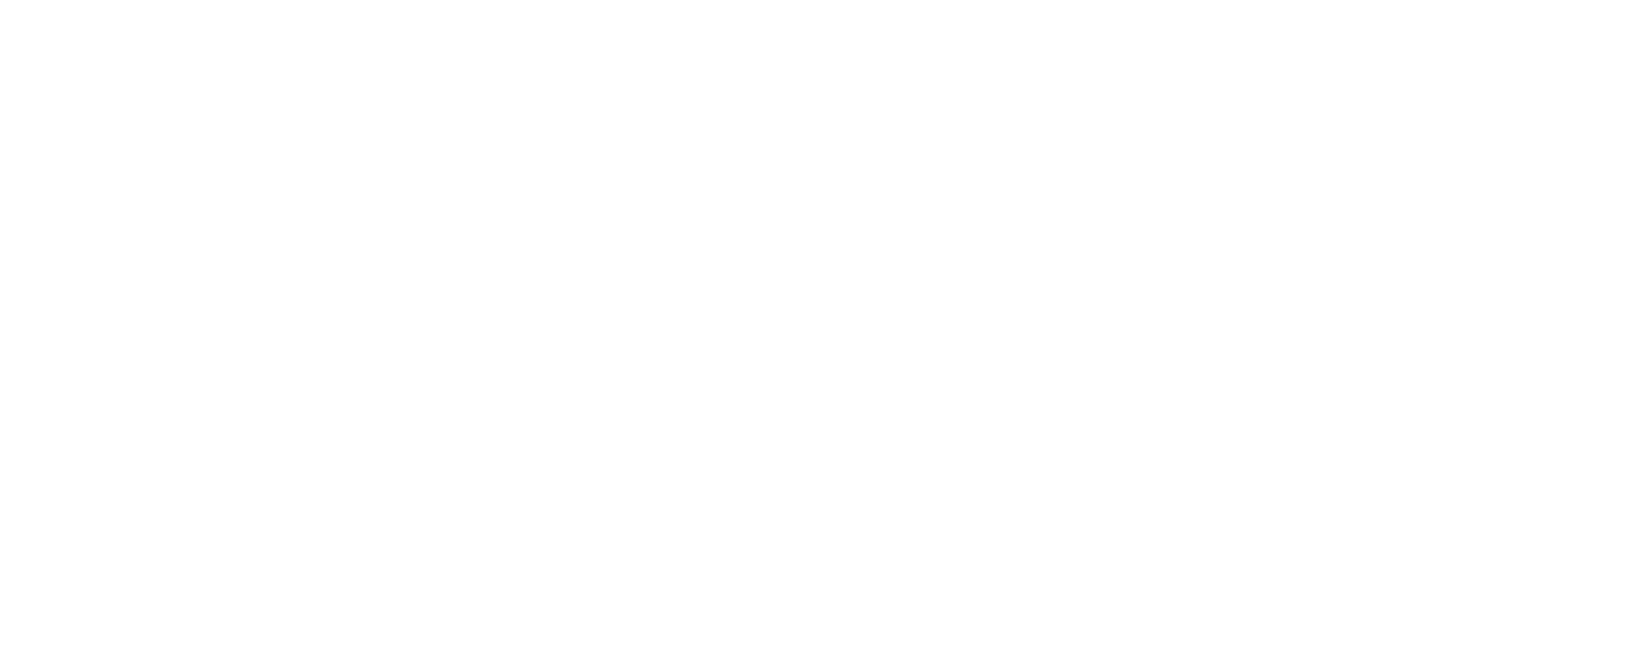 stubbornMVMT